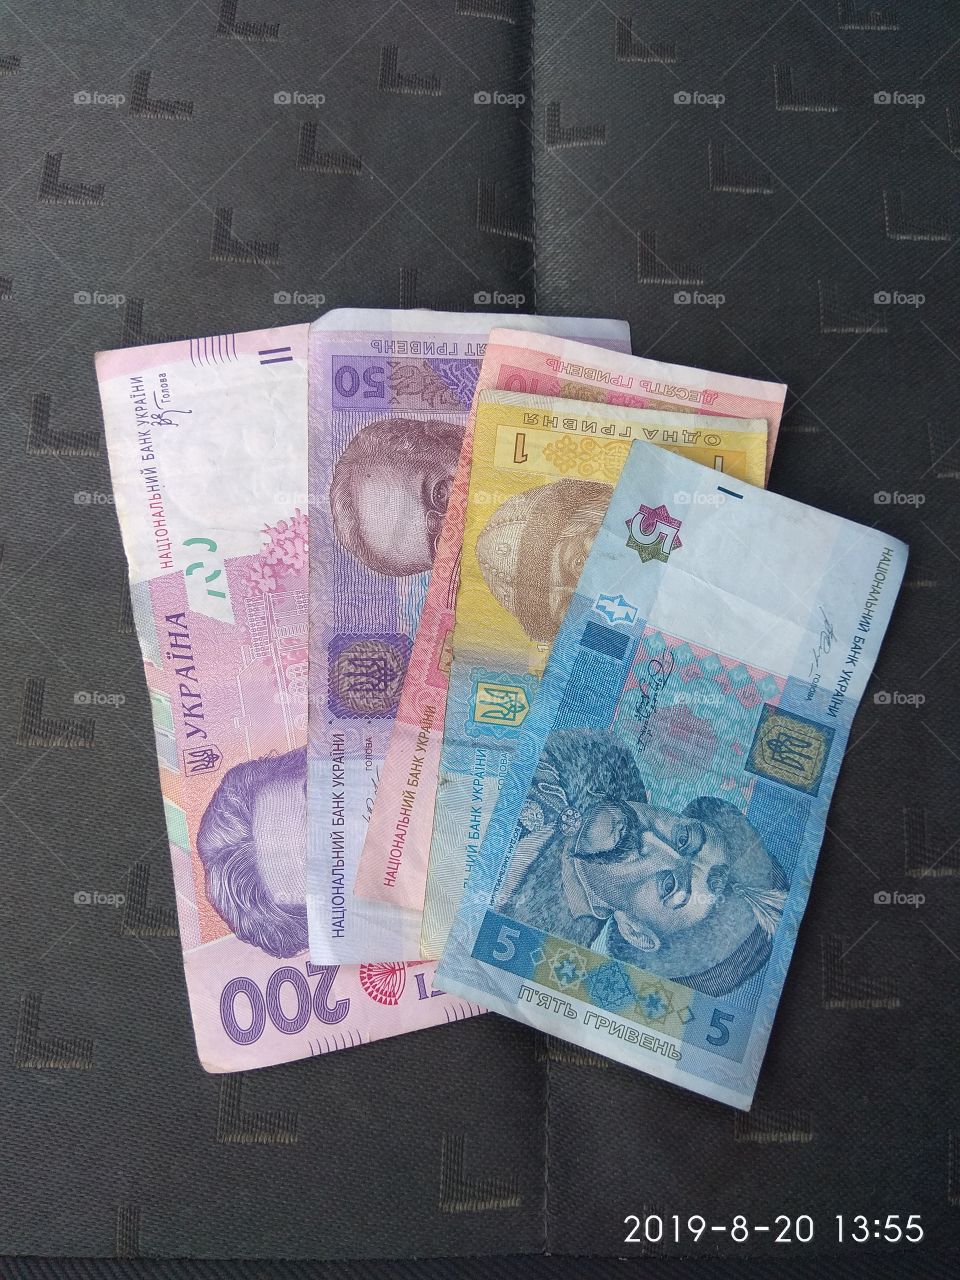 Ukranian money. Hryvna cash